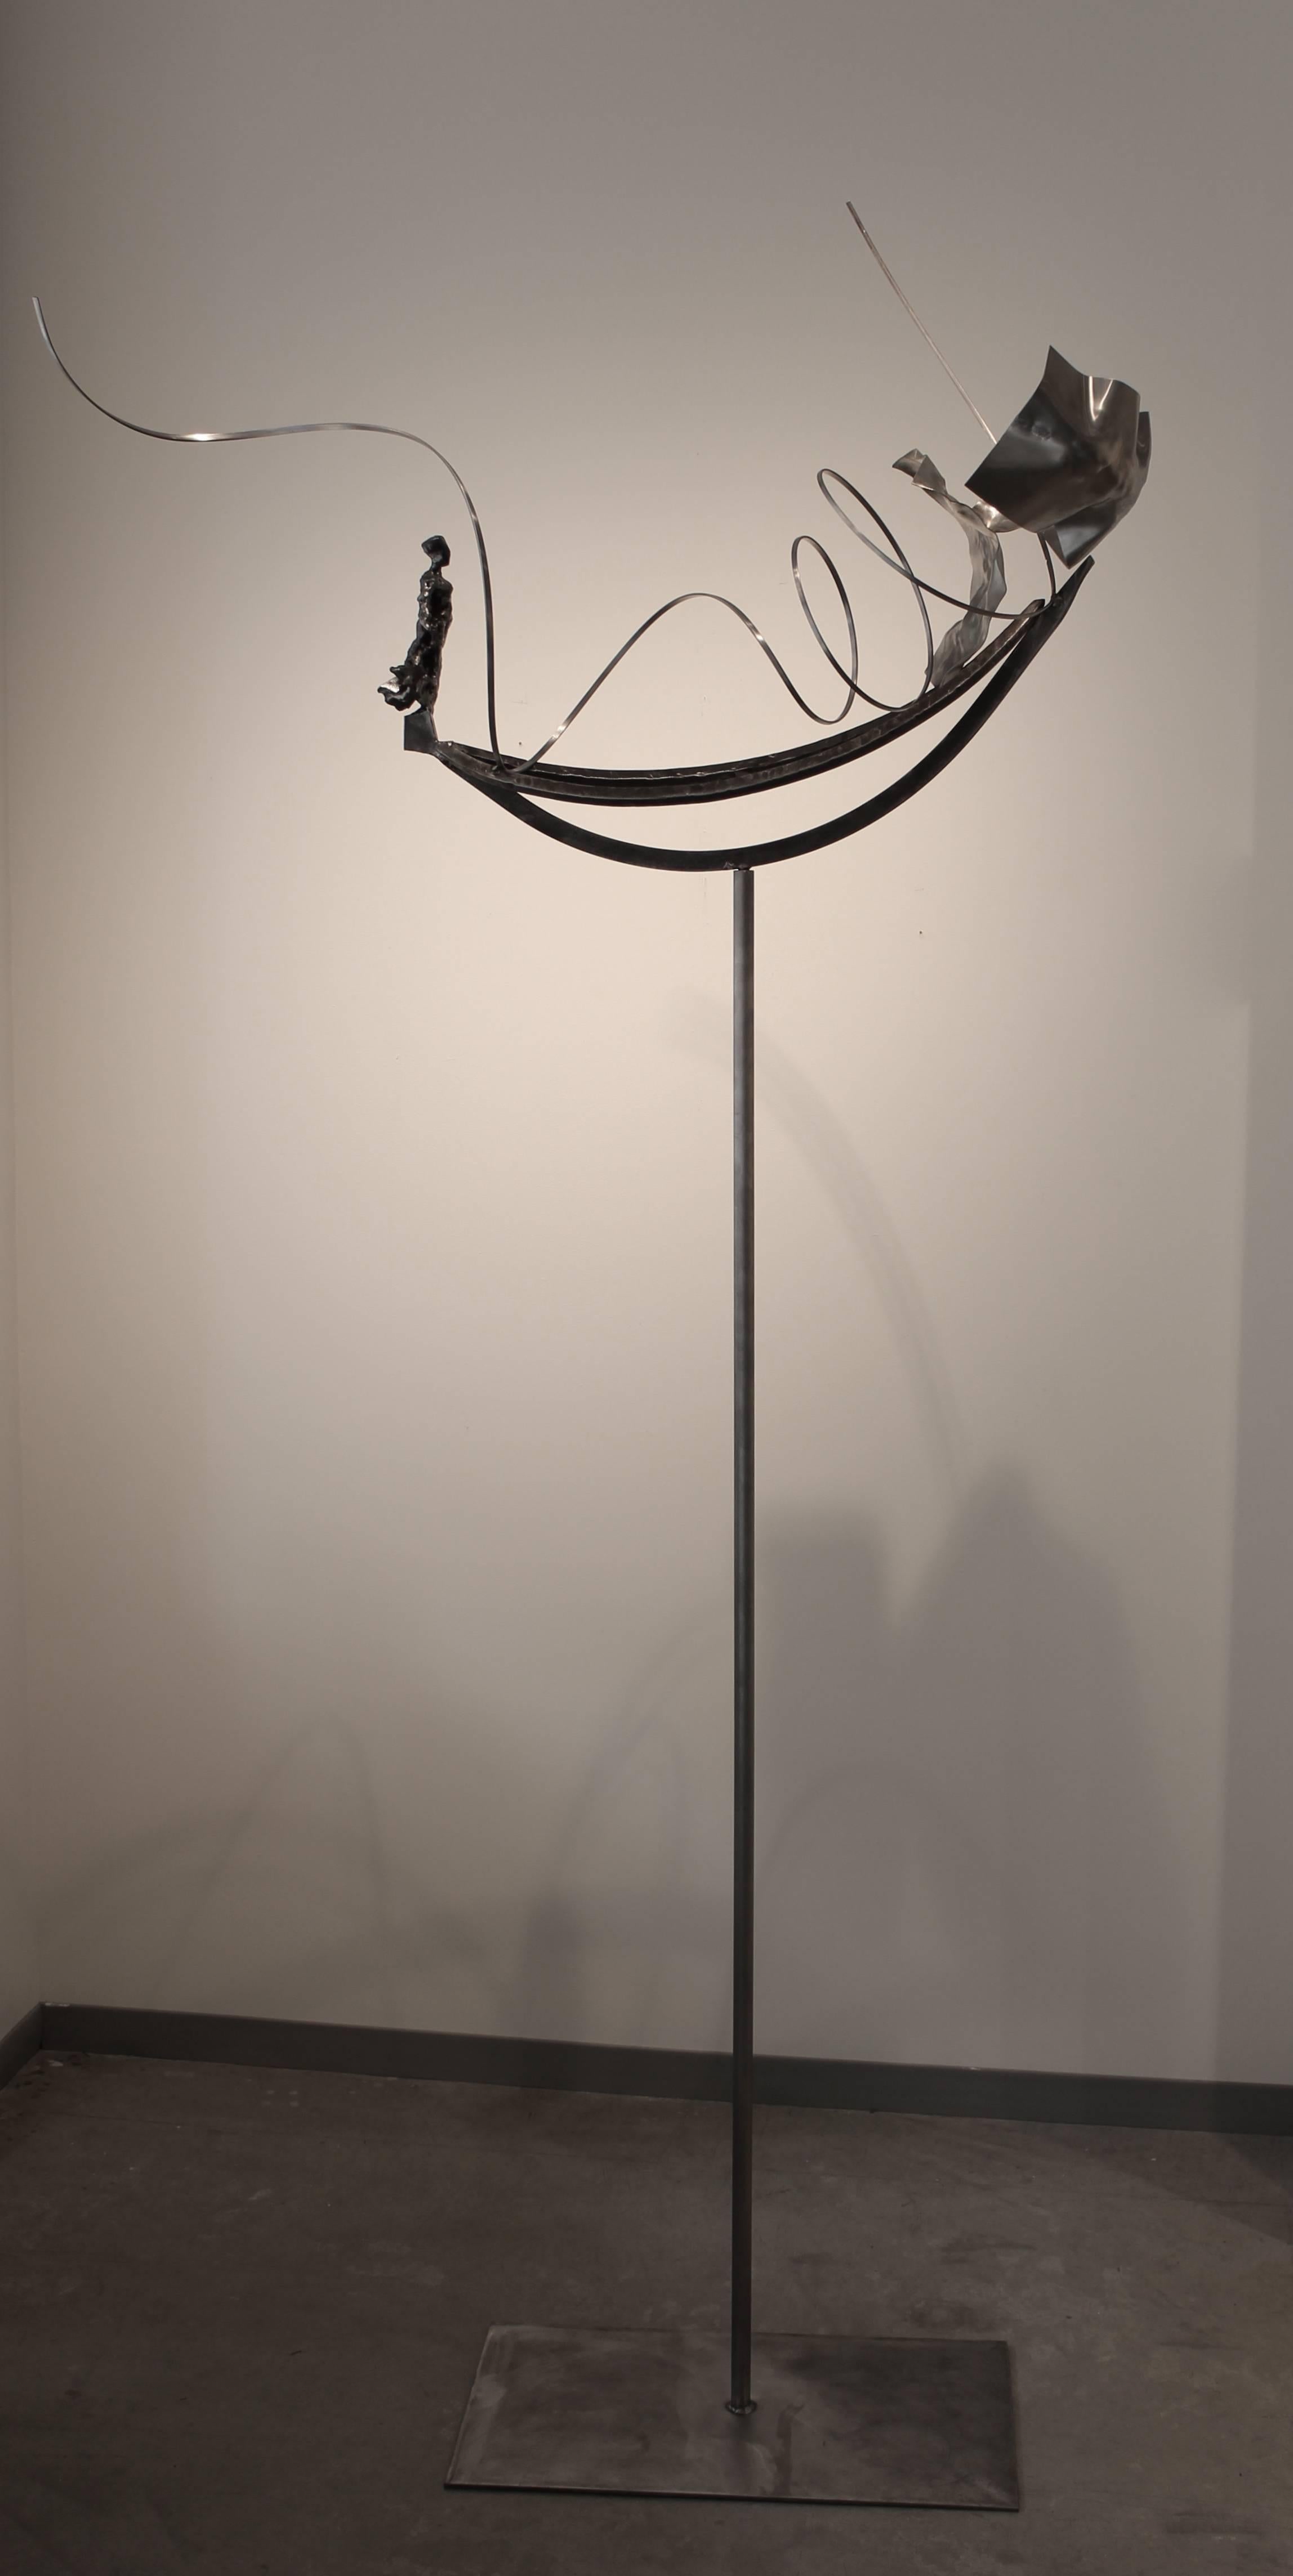 Wojtek Biczysko Figurative Sculpture - Wind and Currents 2, steel sculpture